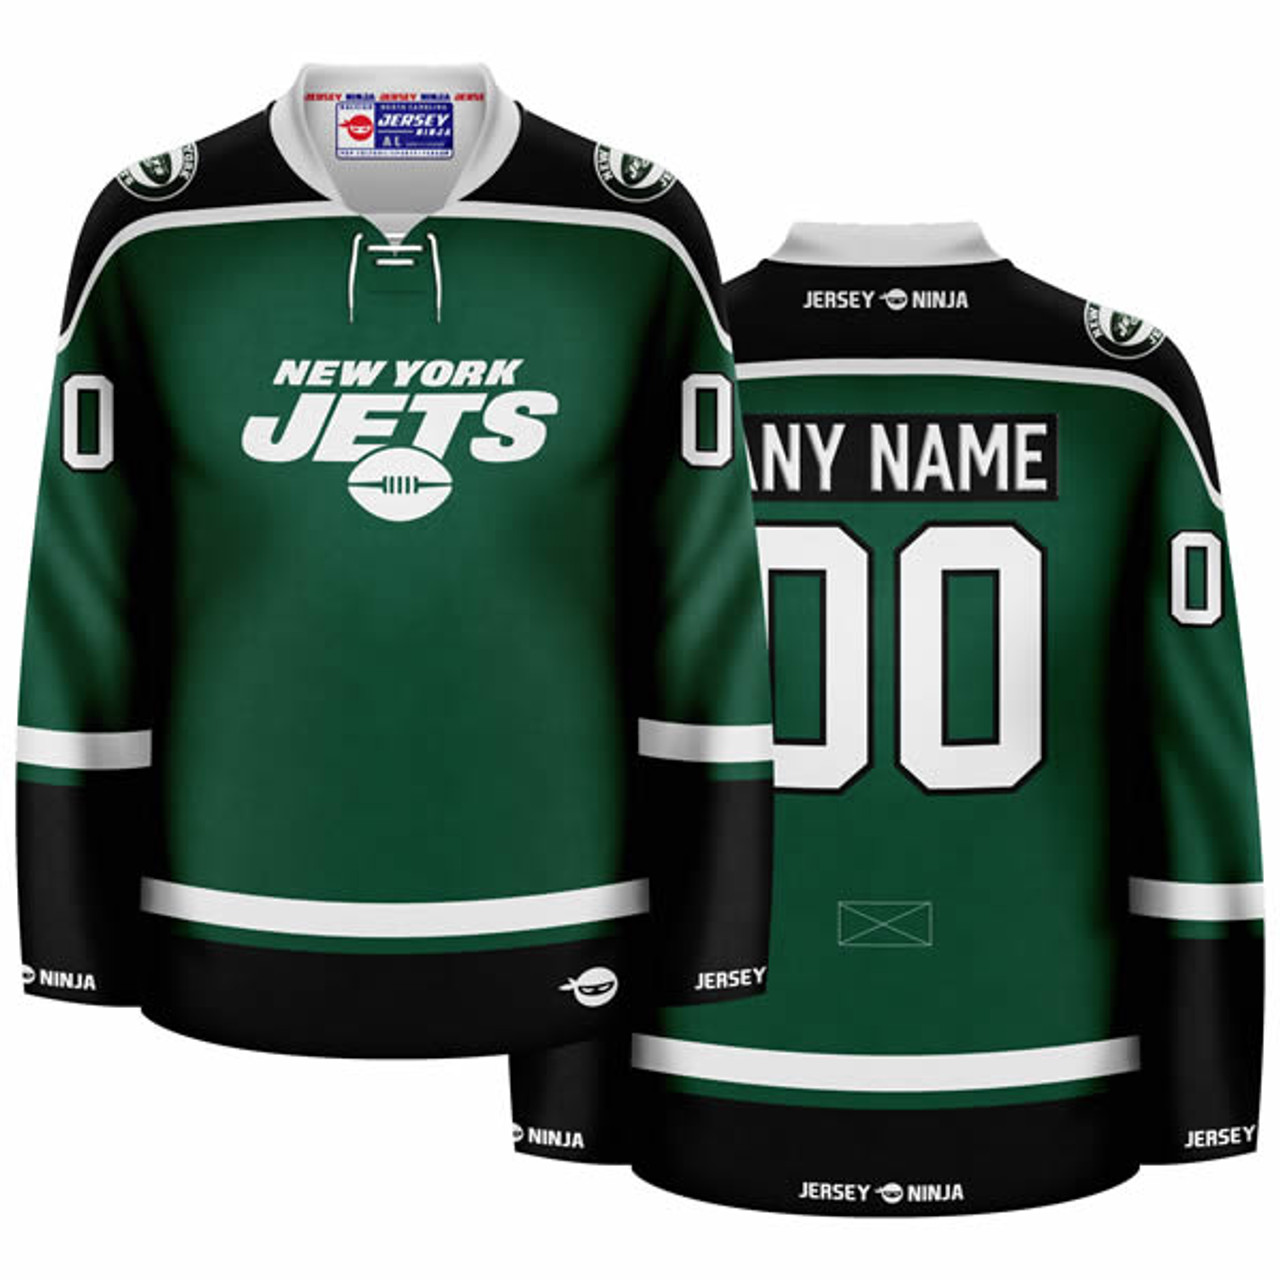 Winnipeg Jets Gear, Jets Jerseys, Jets Pro Shop, Jets Hockey Apparel